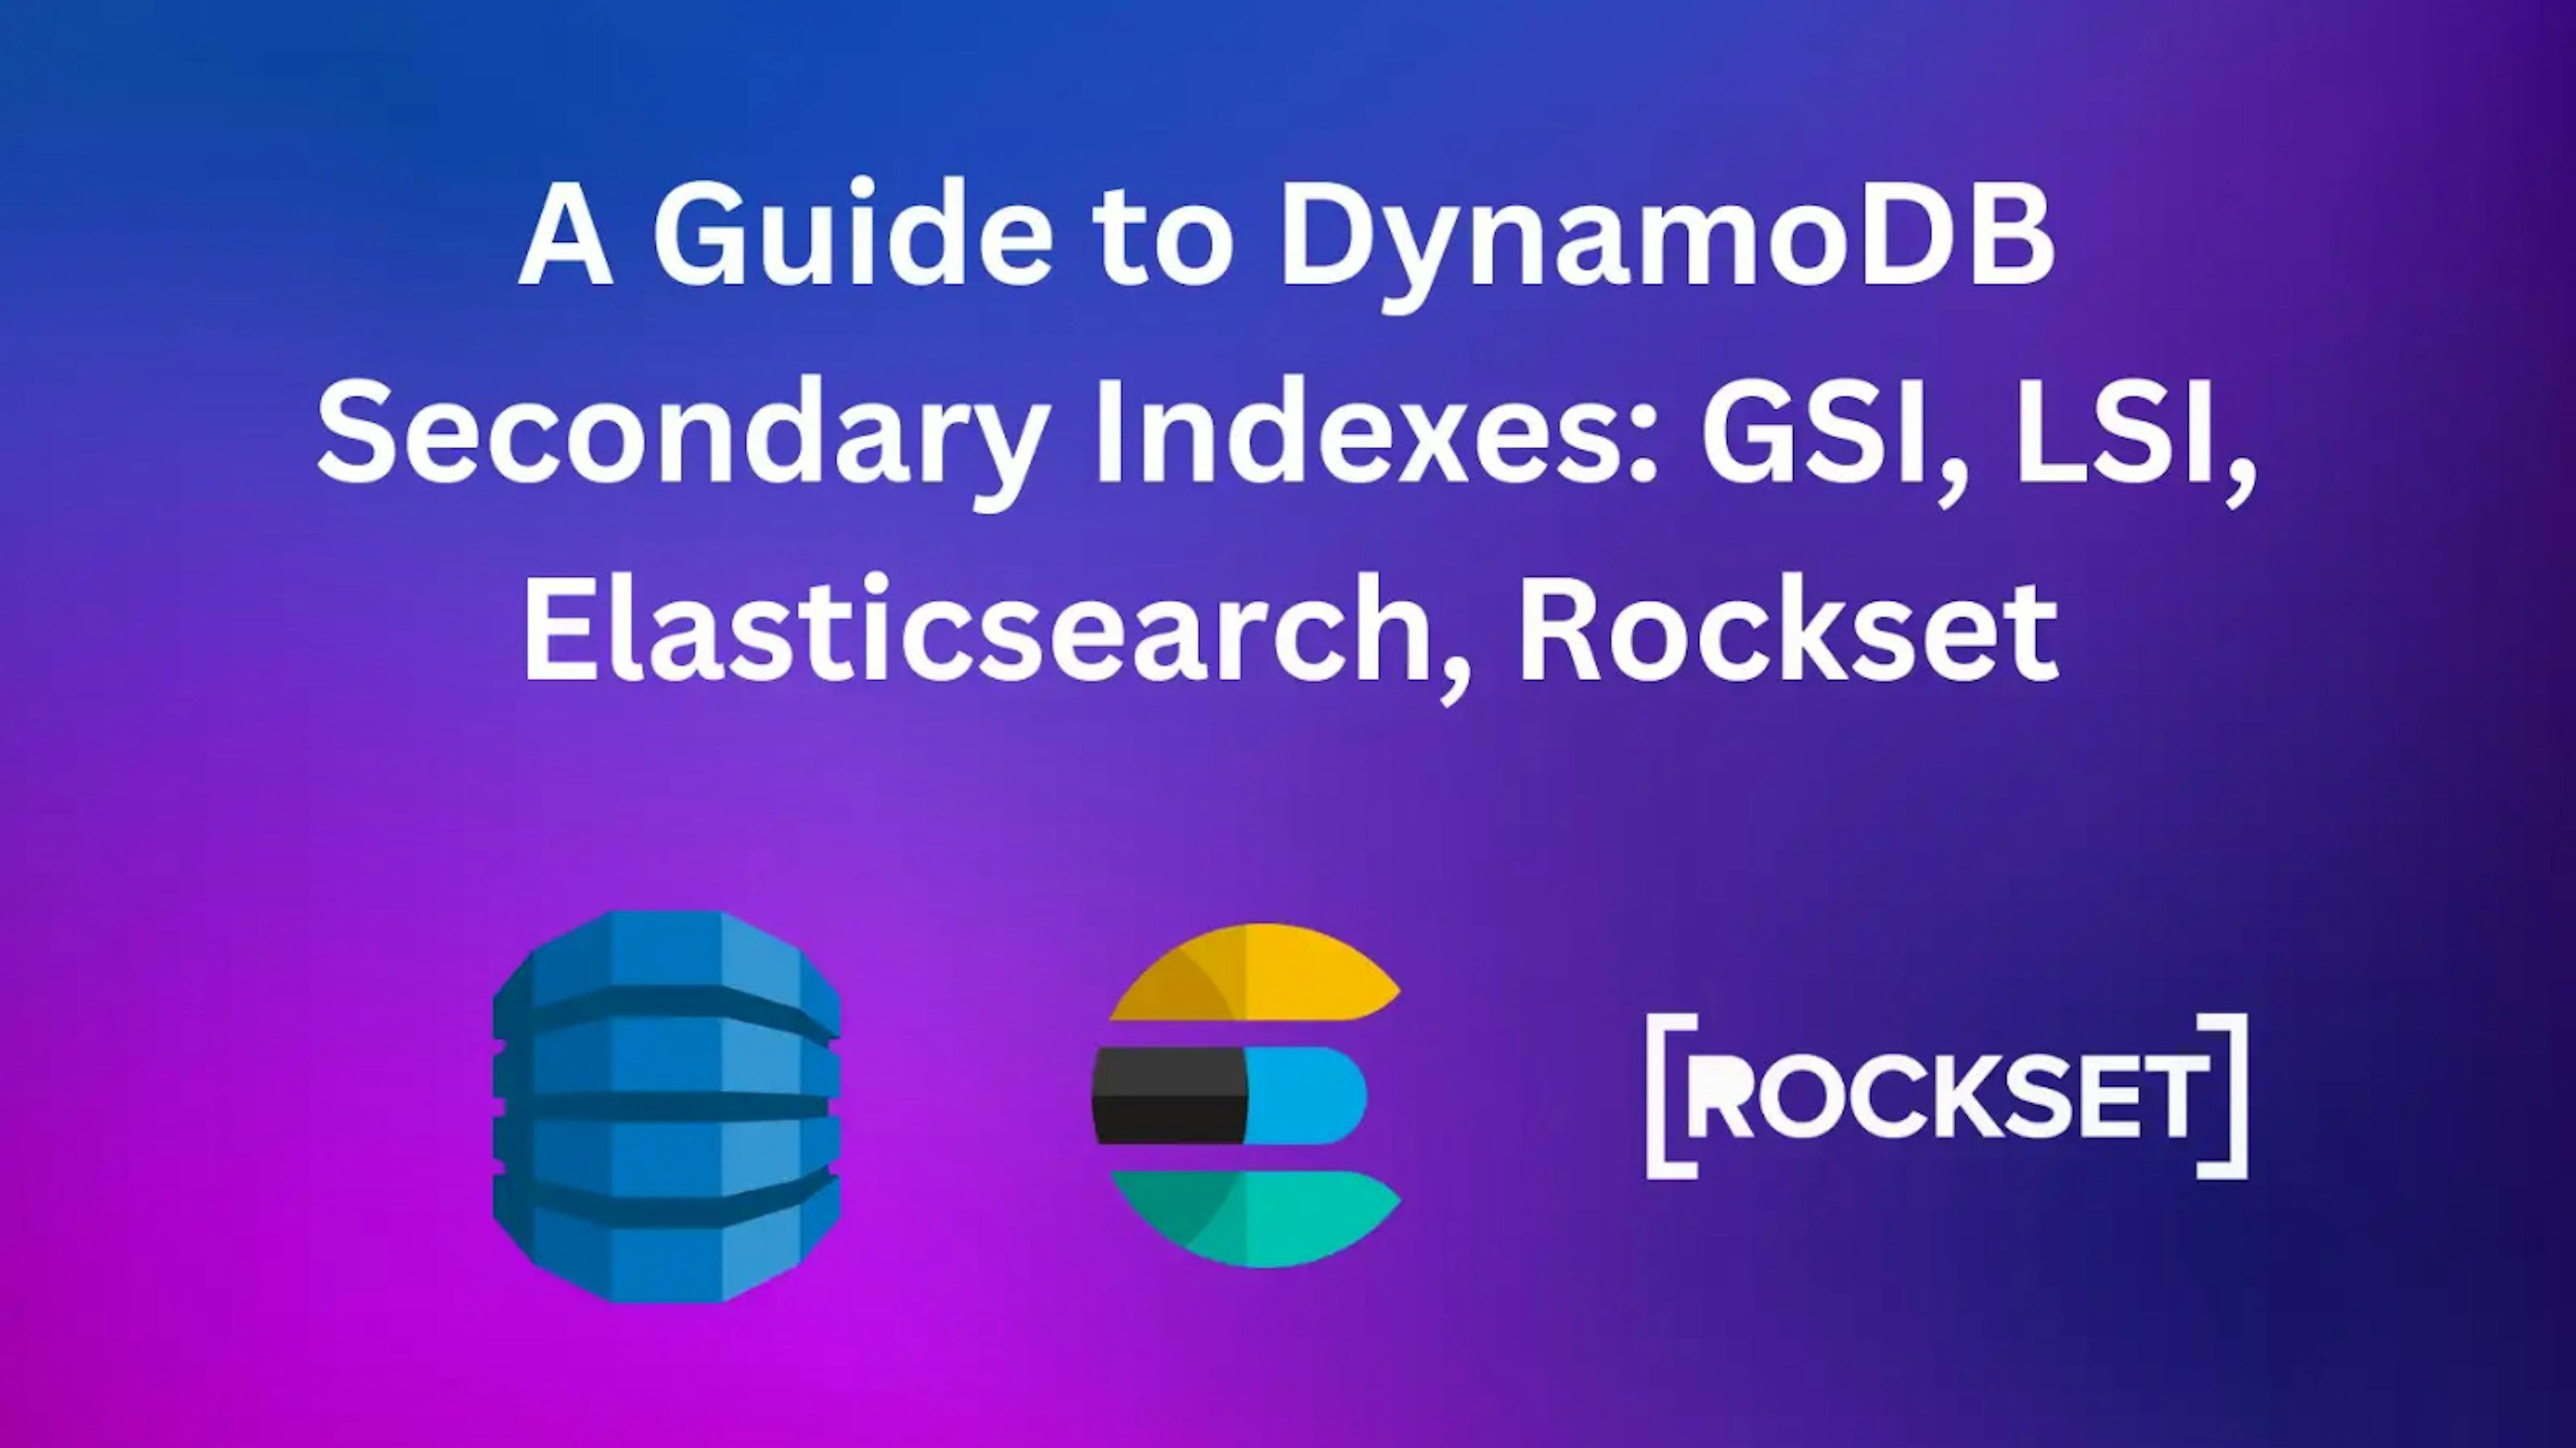 featured image - Como o Rockset se compara ao Elasticsearch nos índices secundários do DynamoDB